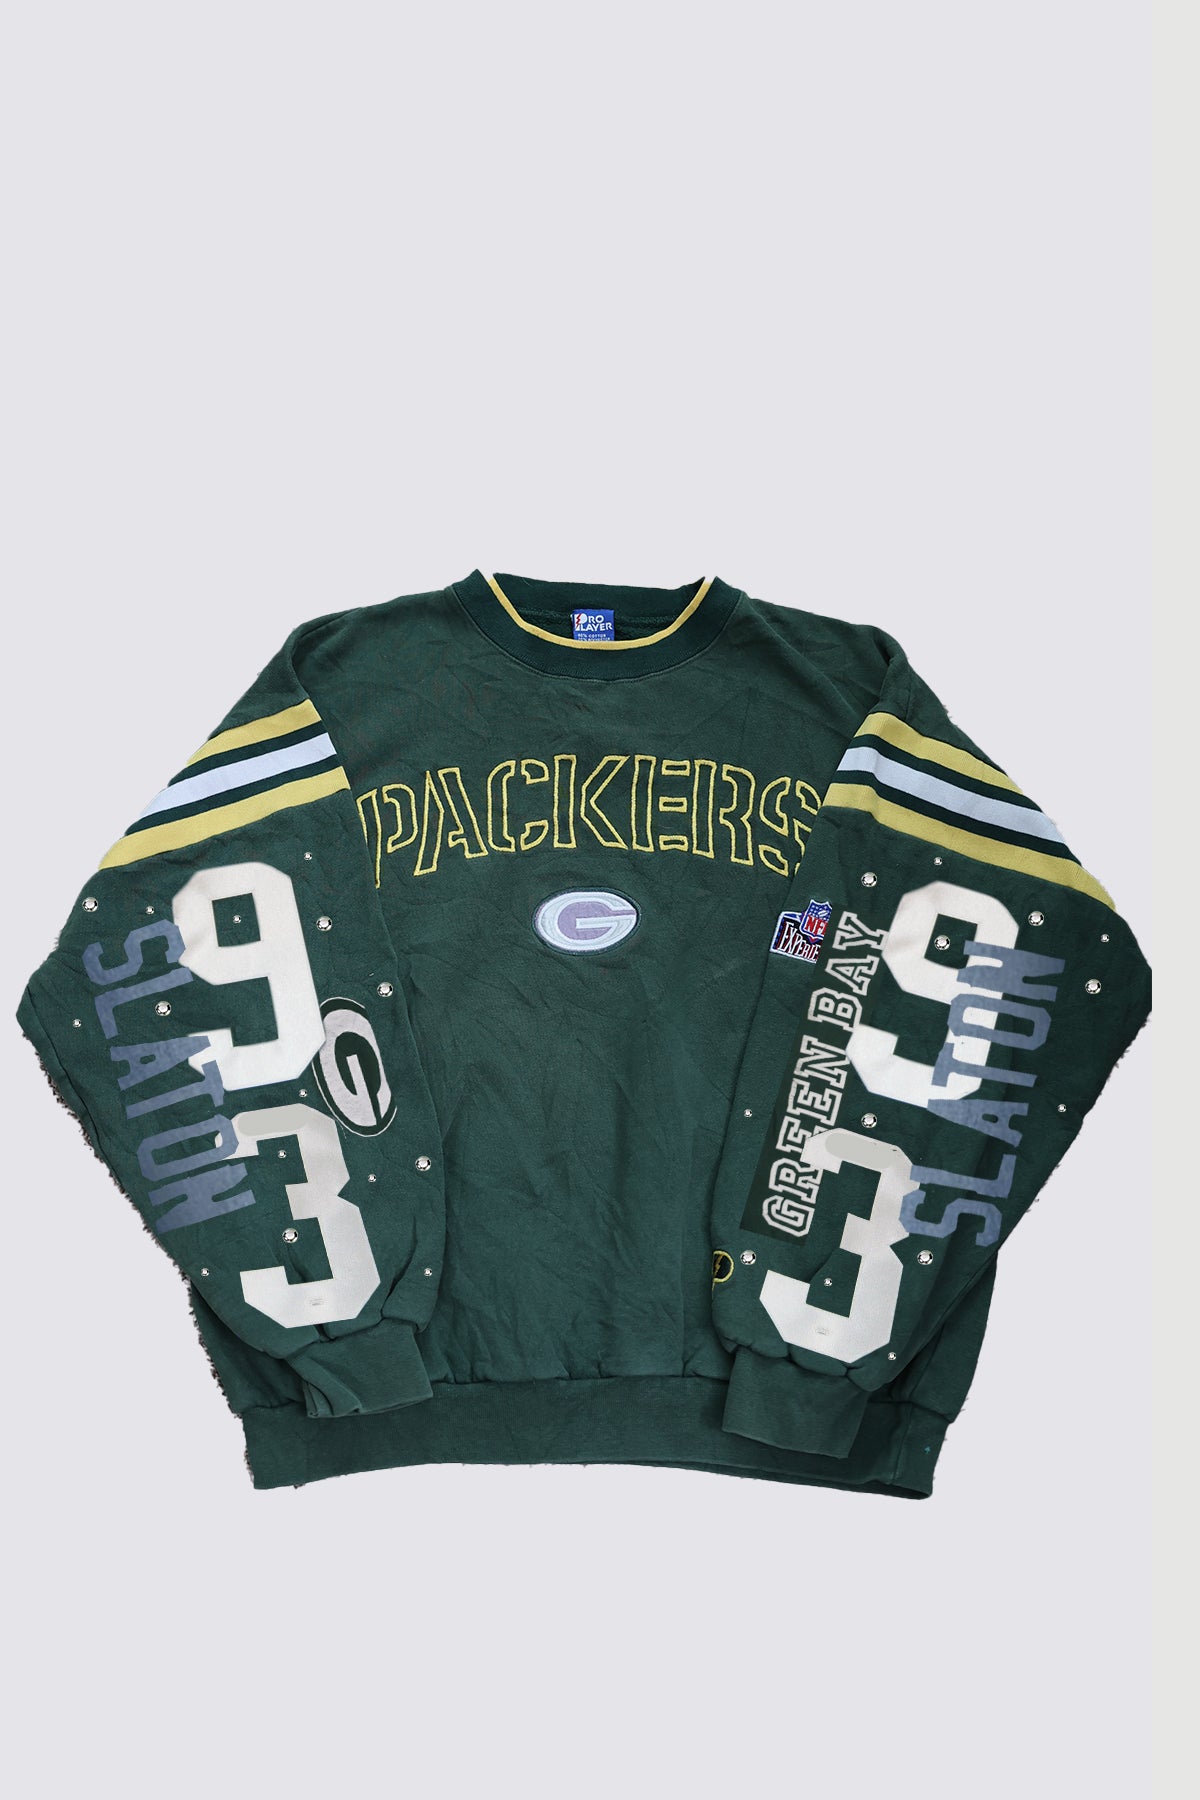 Custom Order Packers Sweatshirt For Sue